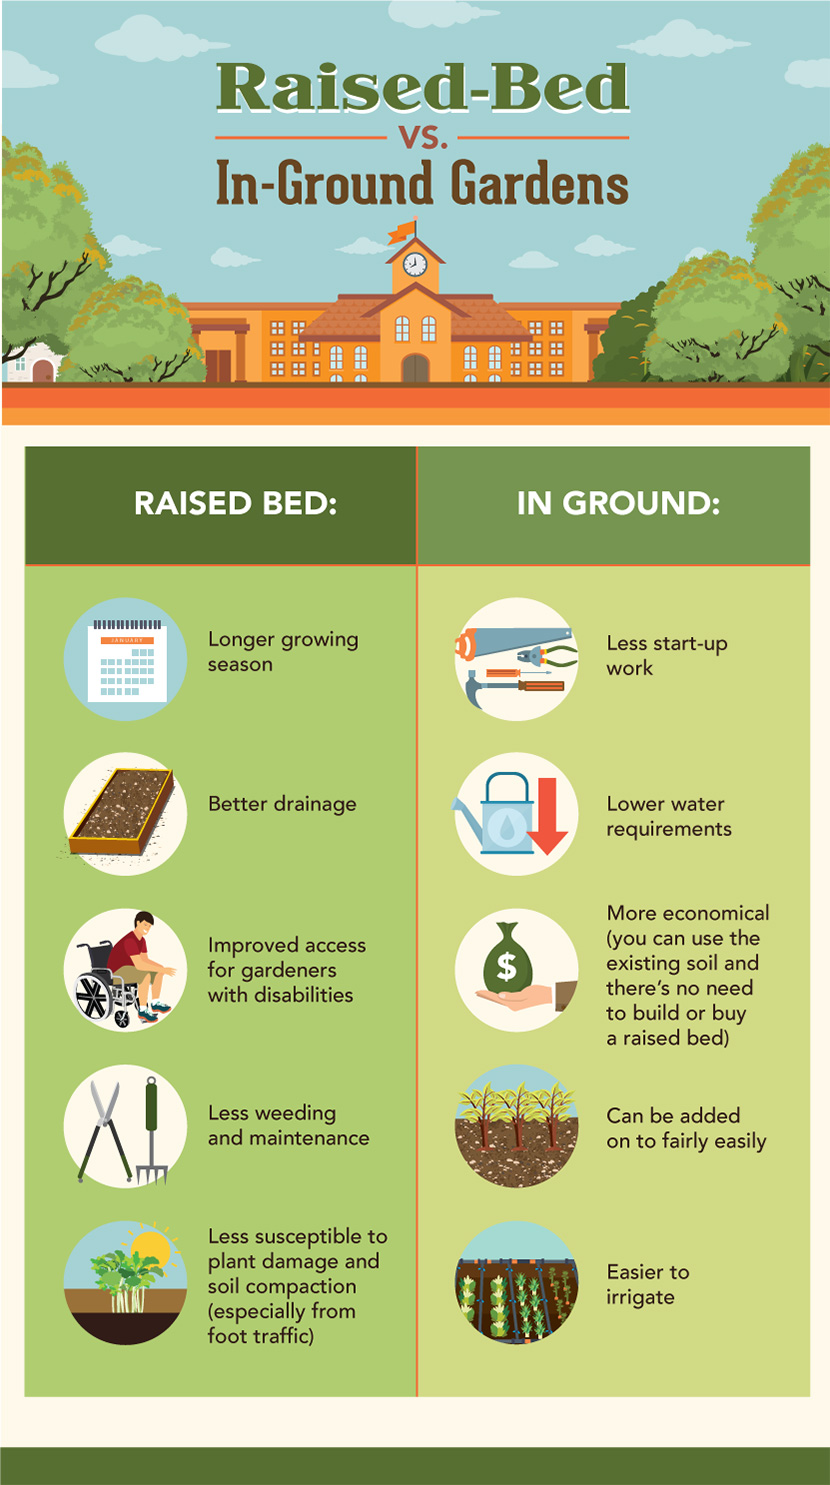 Getting Schooled In The Garden – How To Start A School Garden...